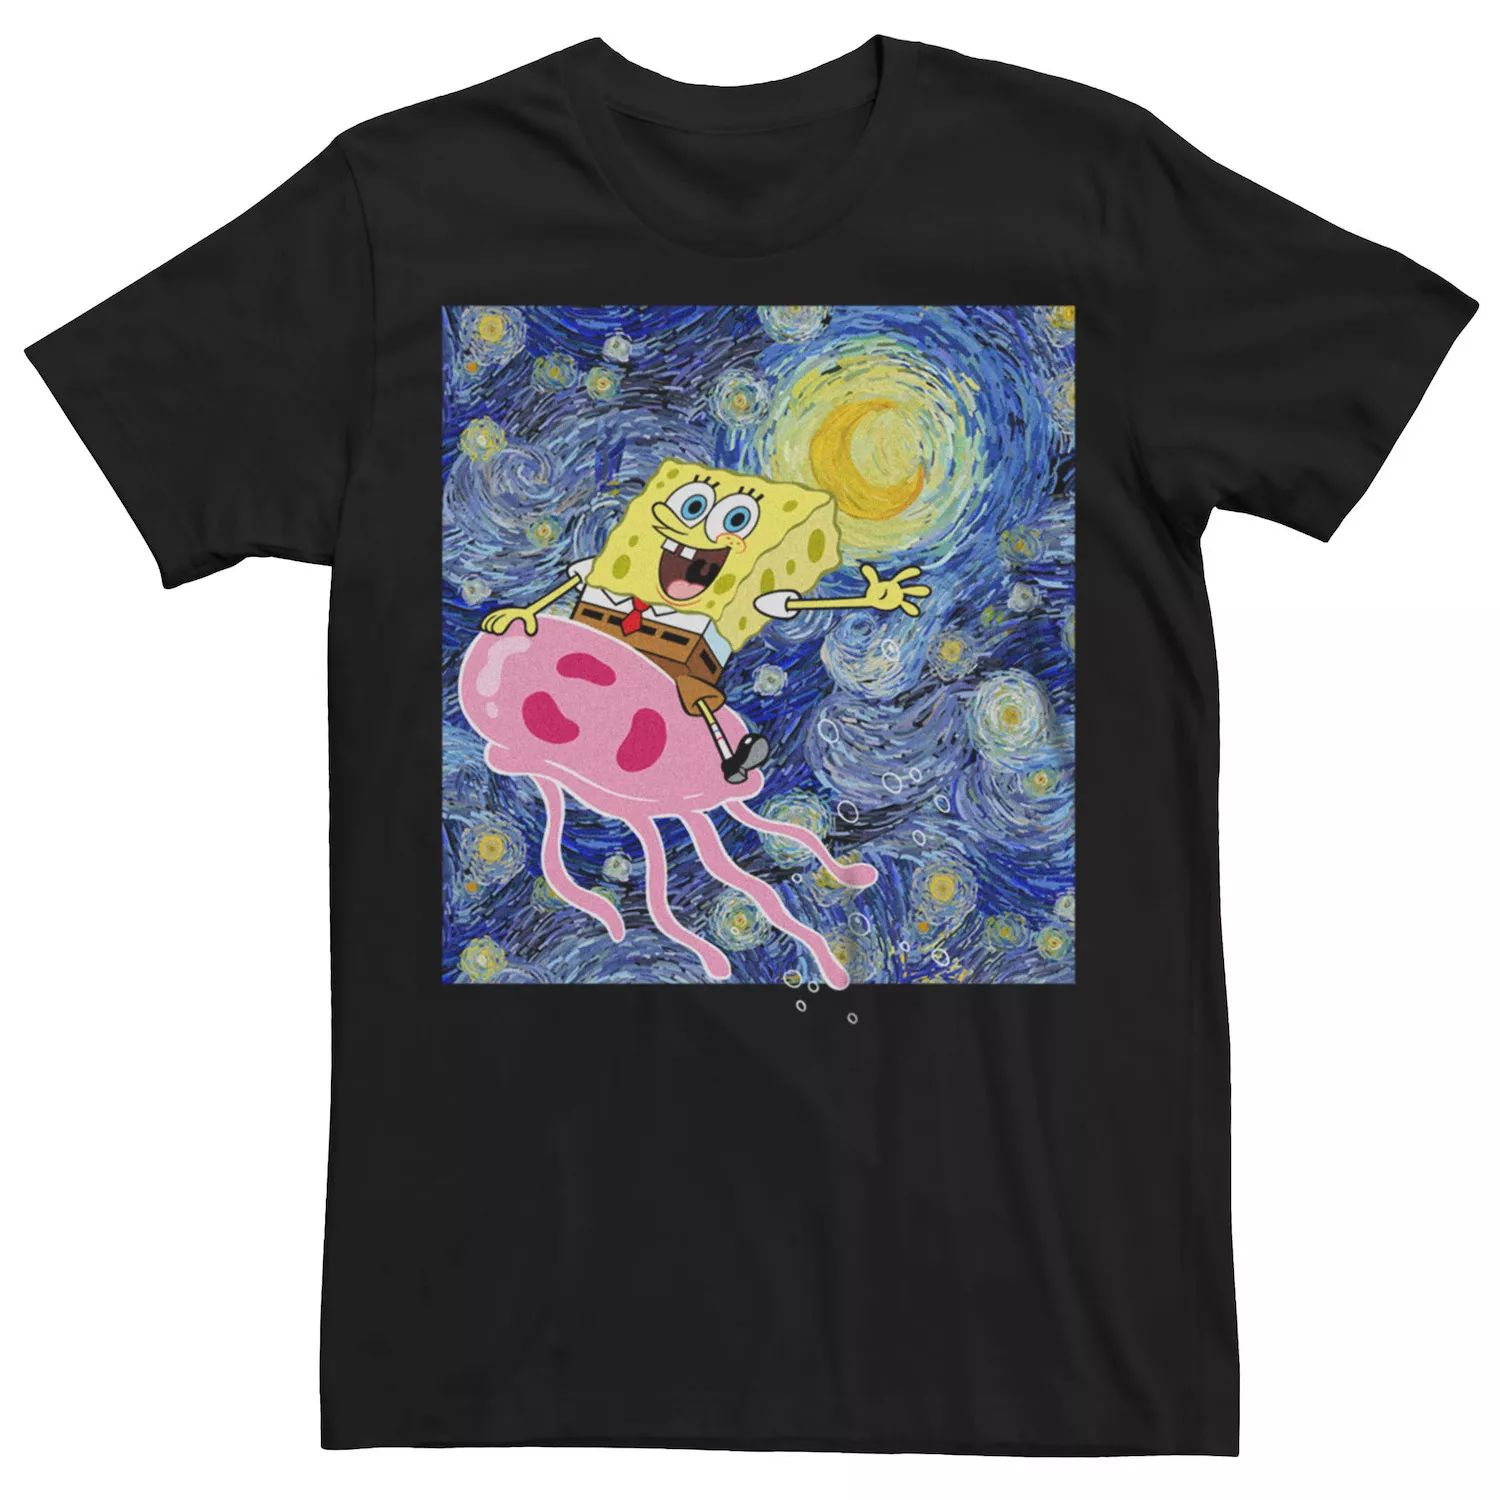 Мужская футболка «Звездная ночь» с изображением Губки Боба Квадратные Штаны Licensed Character